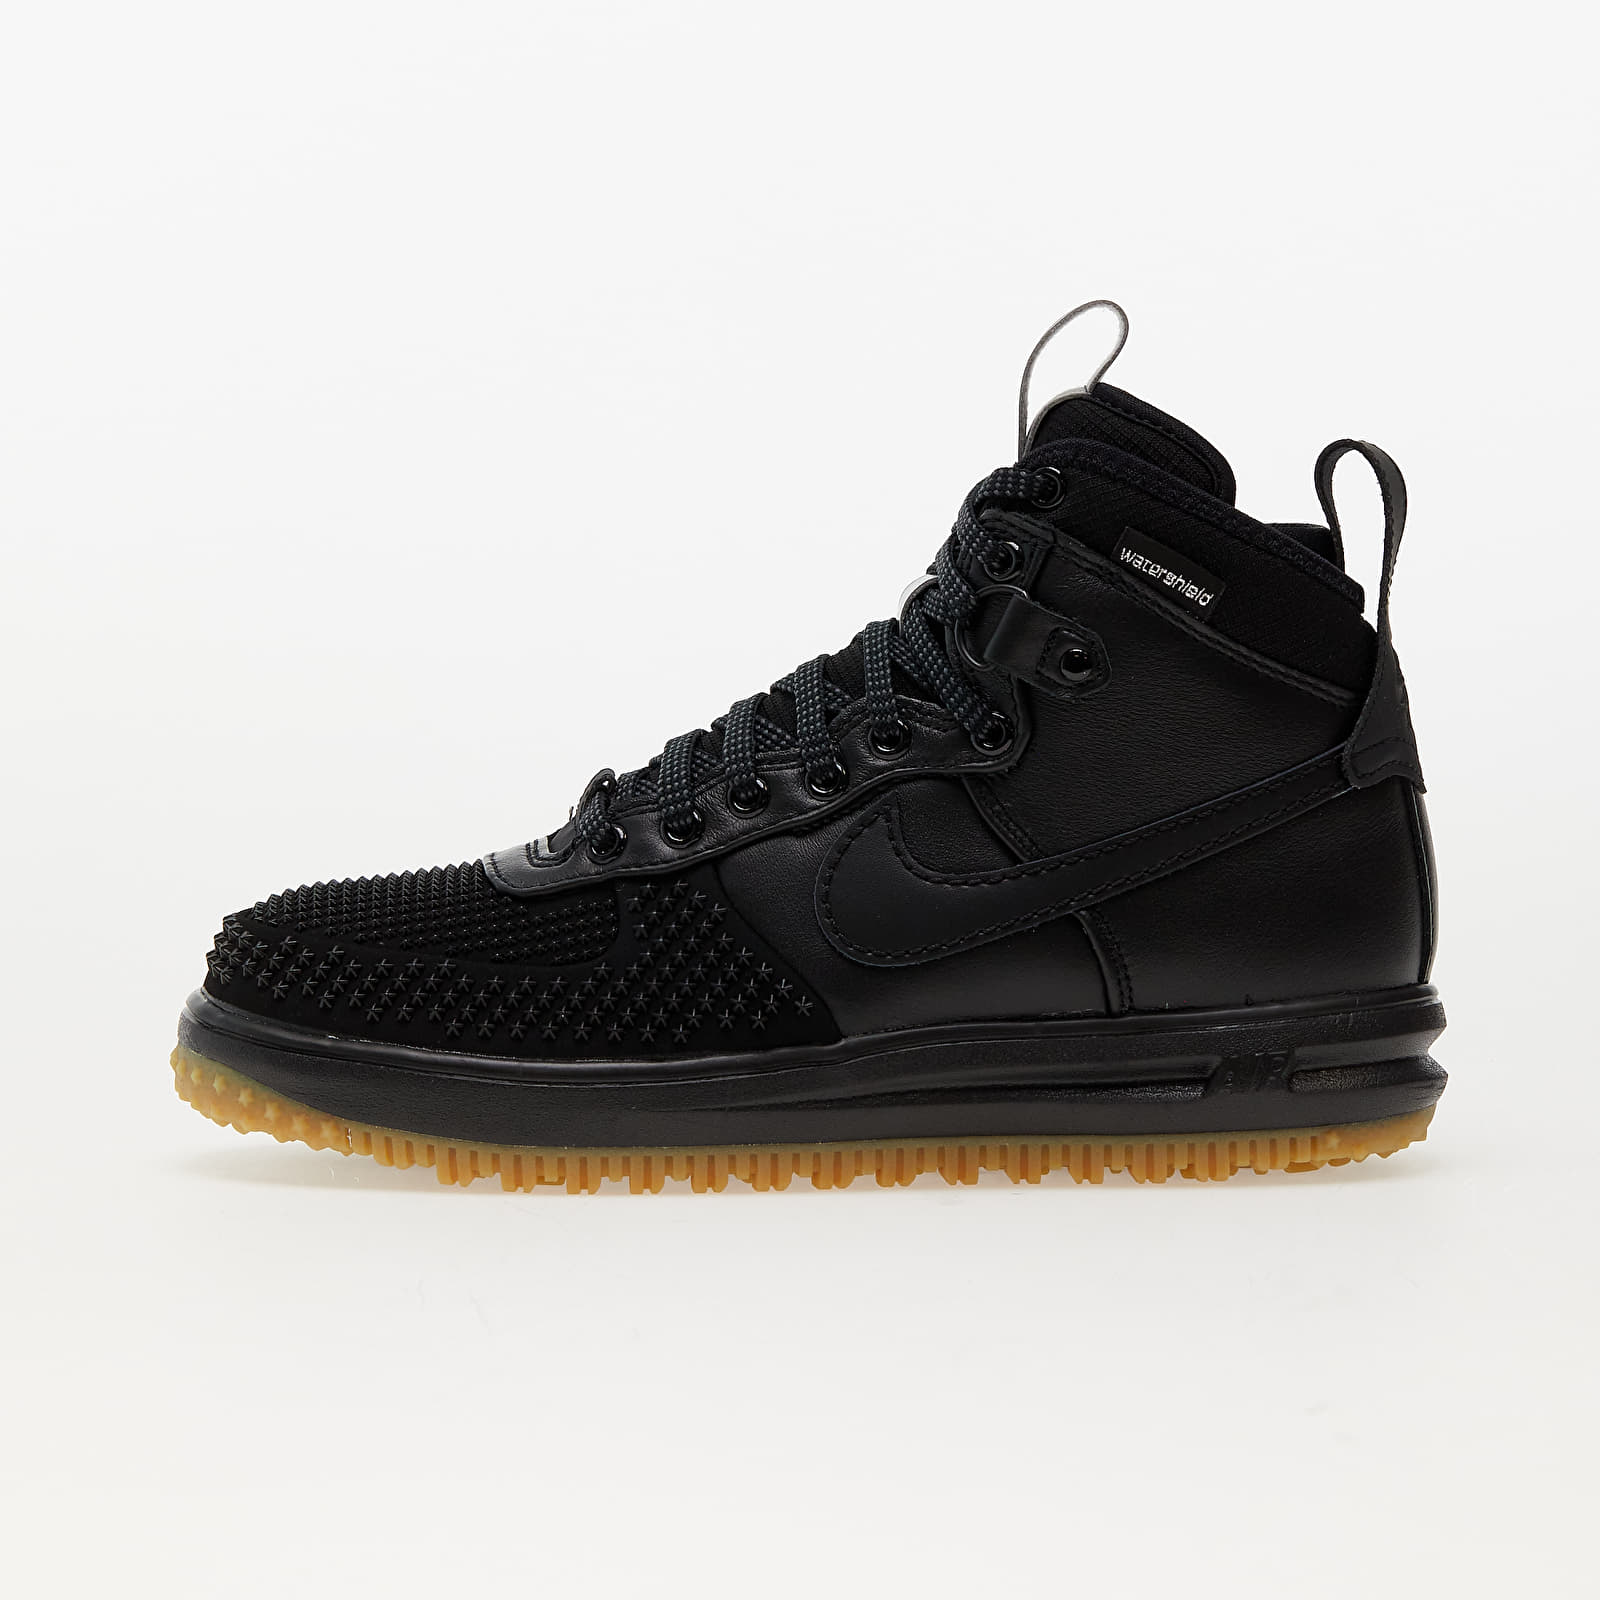 Încălțăminte și sneakerși pentru bărbați Nike Lunar Force 1 Duckboot Black/ Black-Metallic Silver-Anthracite